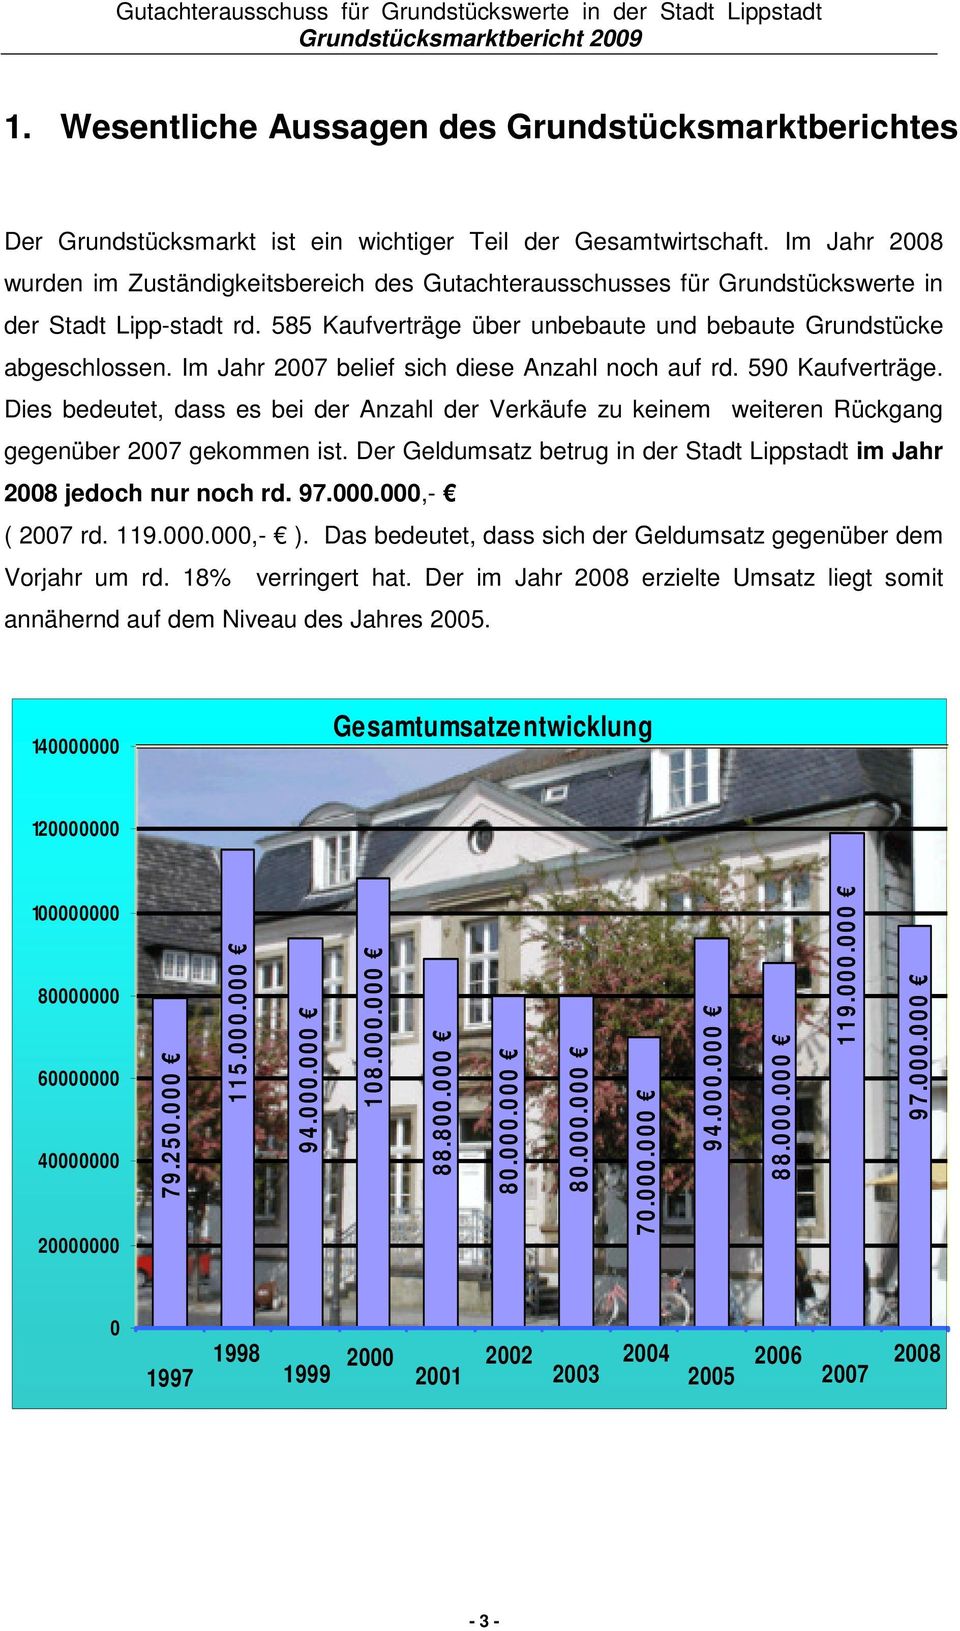 Im Jahr 2008 wurden im Zuständigkeitsbereich des Gutachterausschusses für Grundstückswerte in der Stadt Lipp-stadt rd. 585 Kaufverträge über unbebaute und bebaute Grundstücke abgeschlossen.